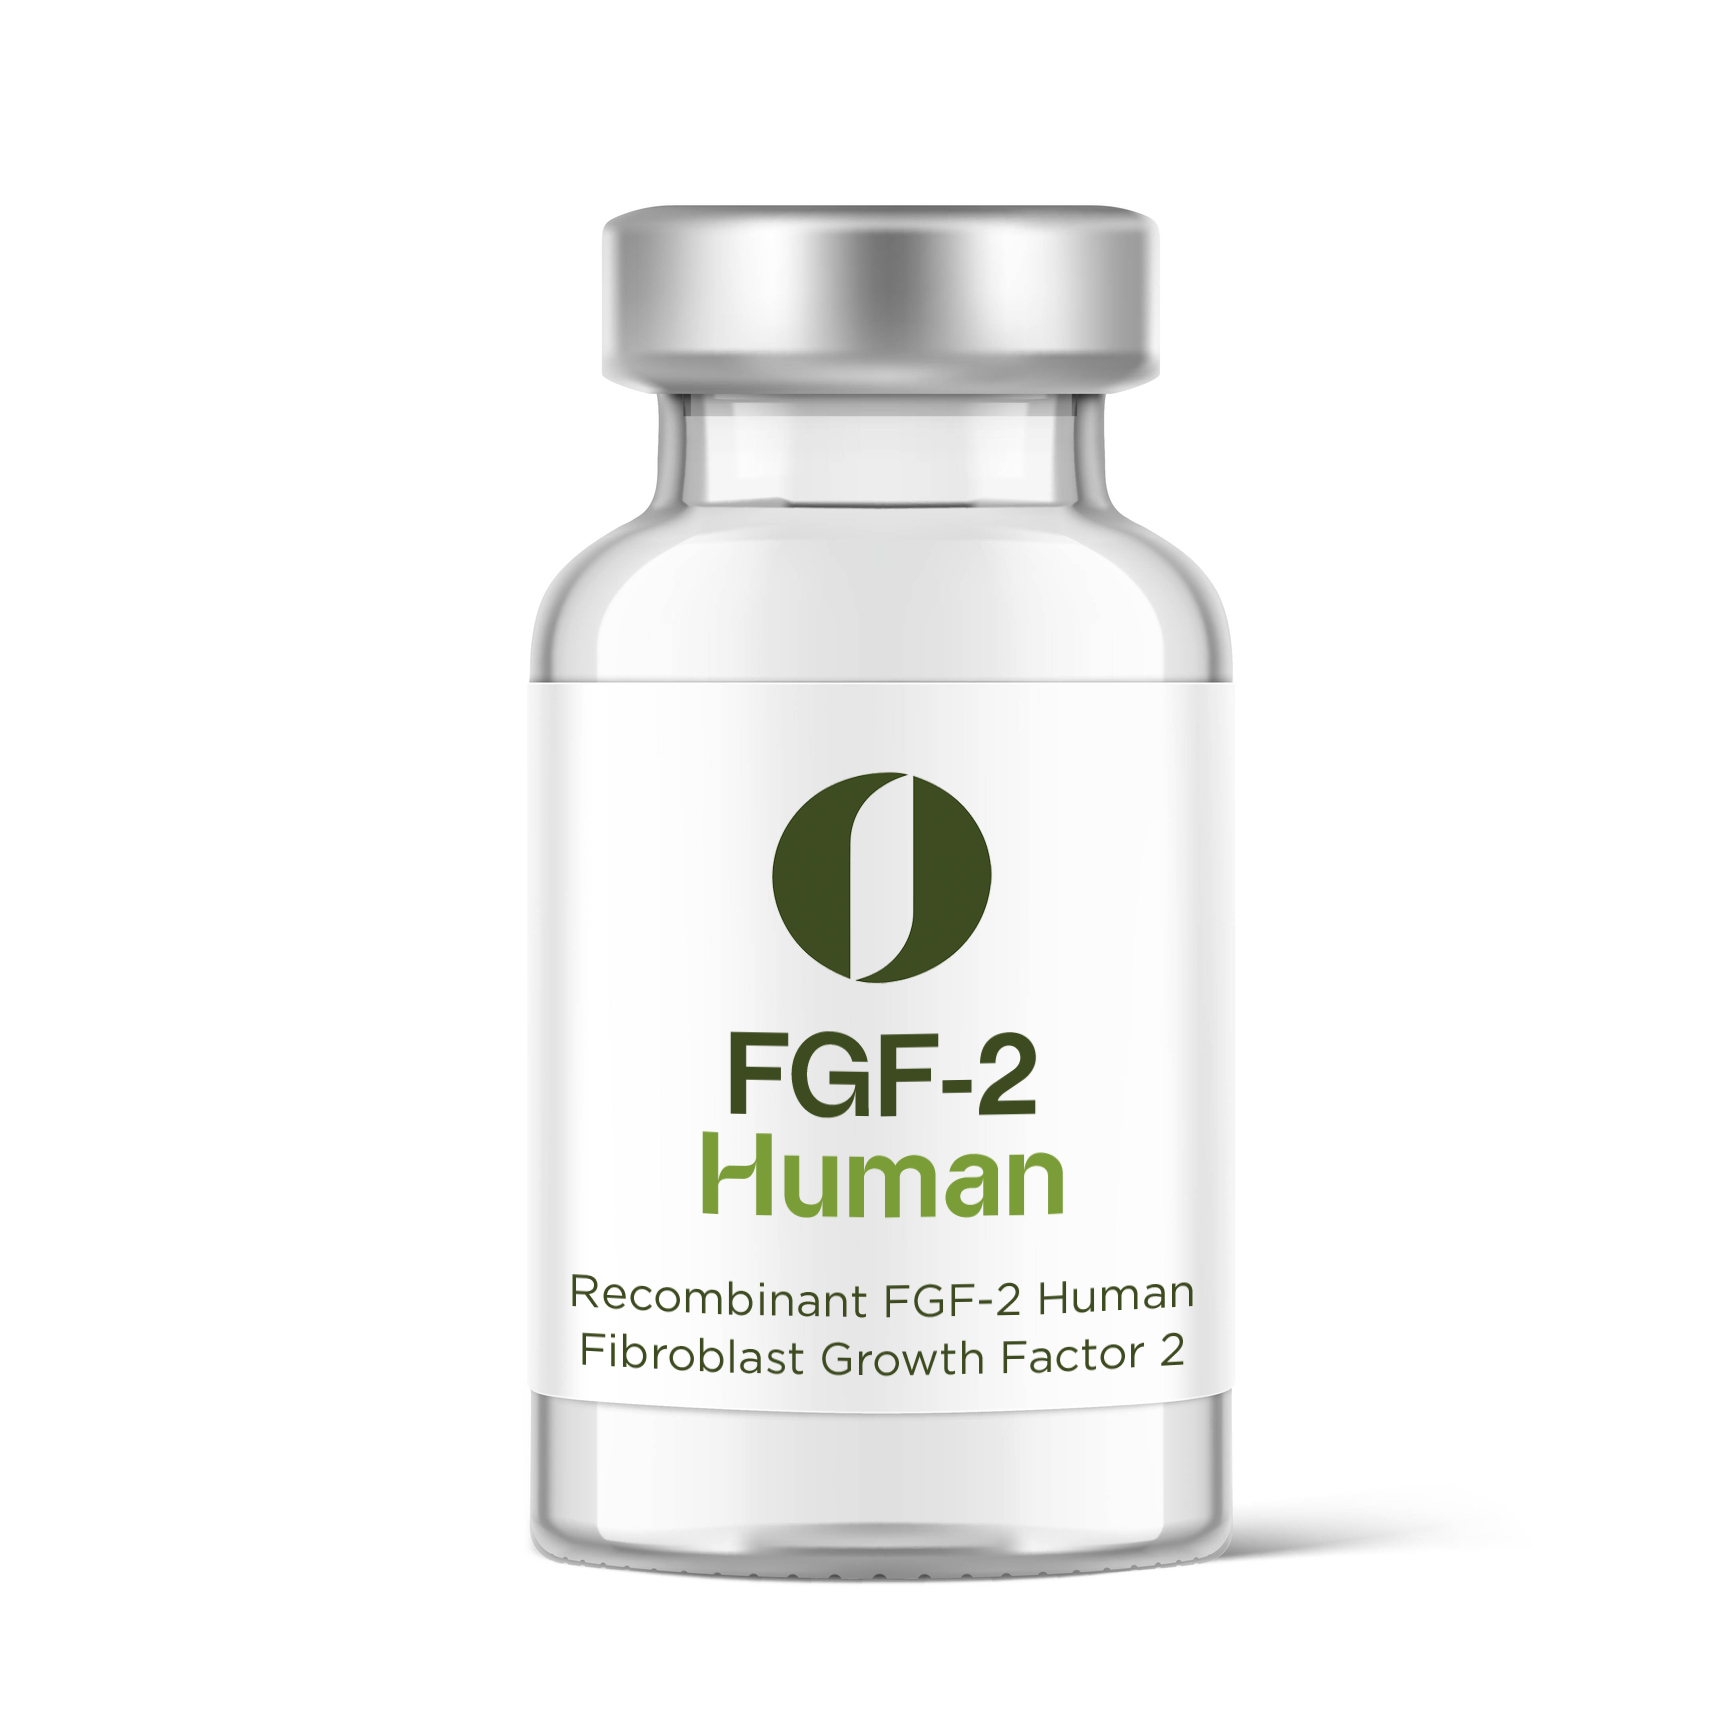 FGF-2 Human